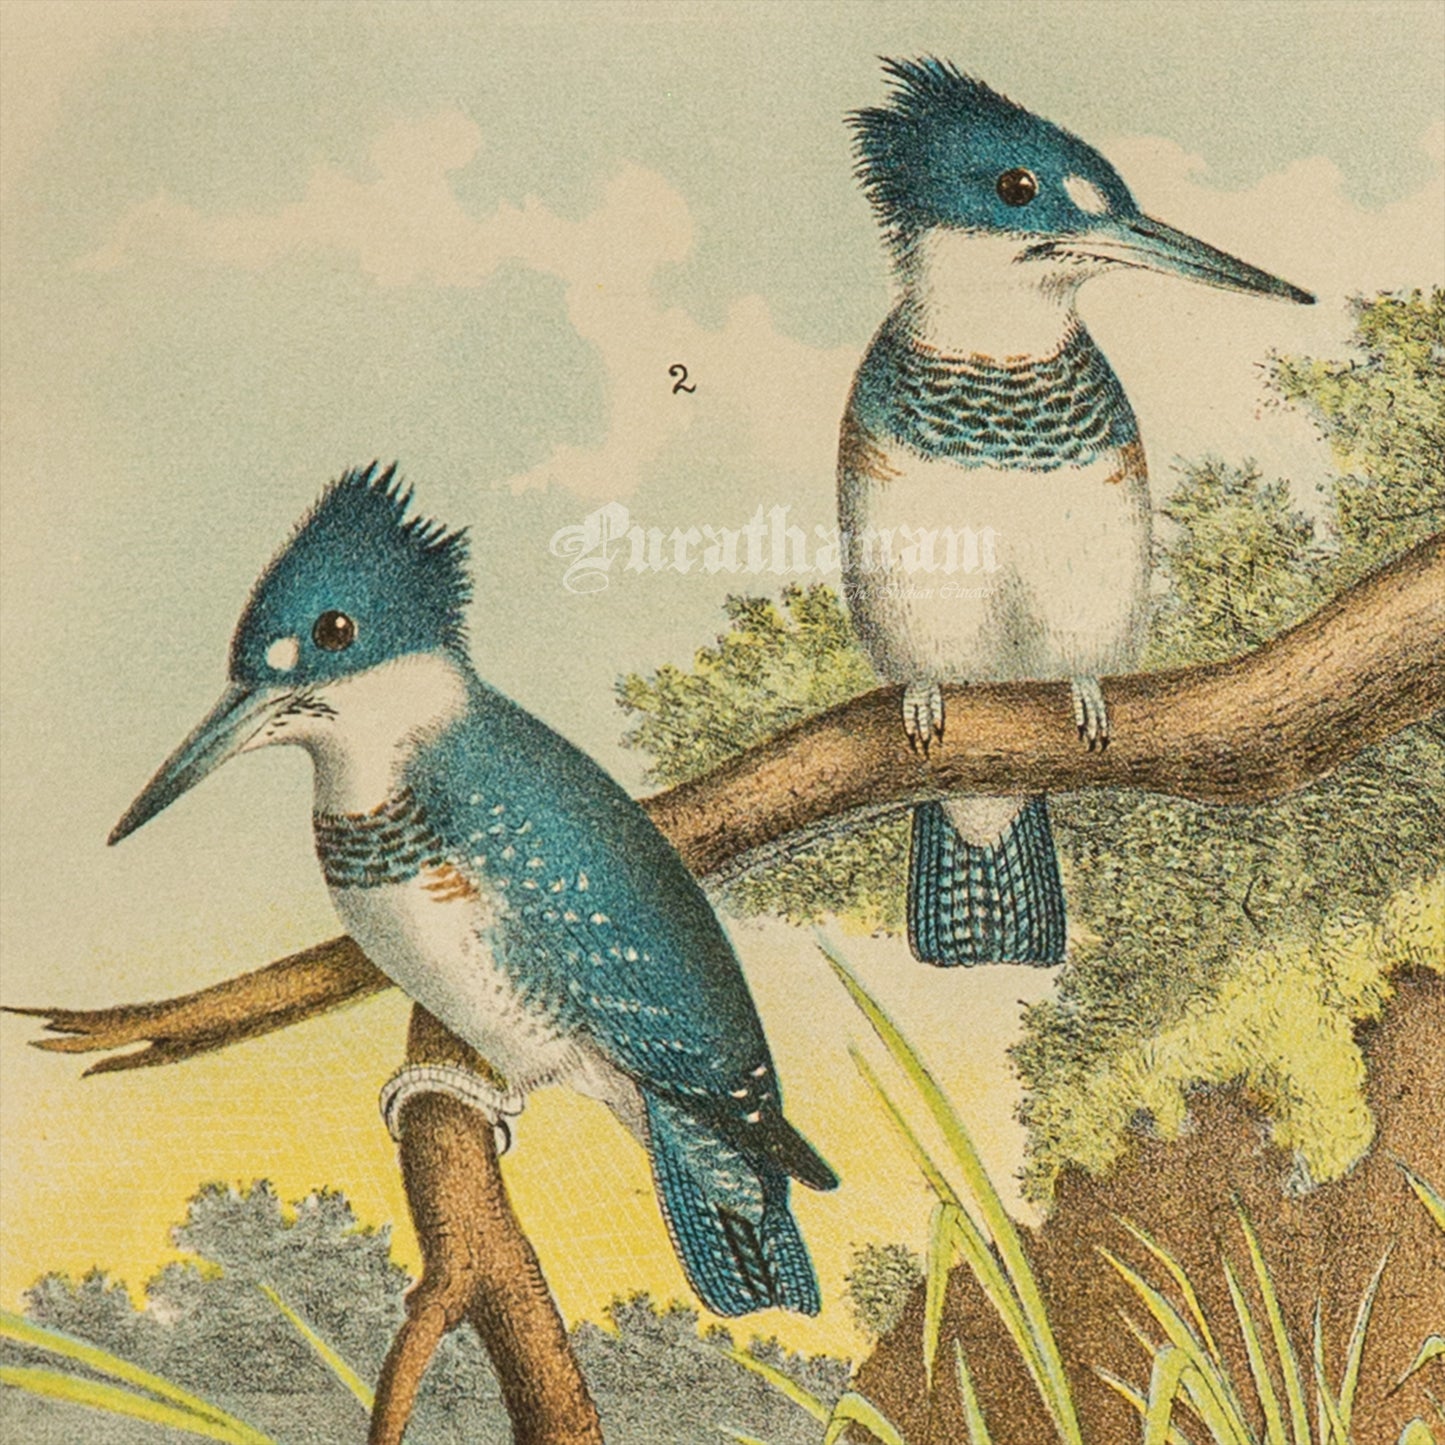 Bird - Chromo lithograph print (Plate - XIX) by Theodore Jasper -  Bird Art / Avian Art